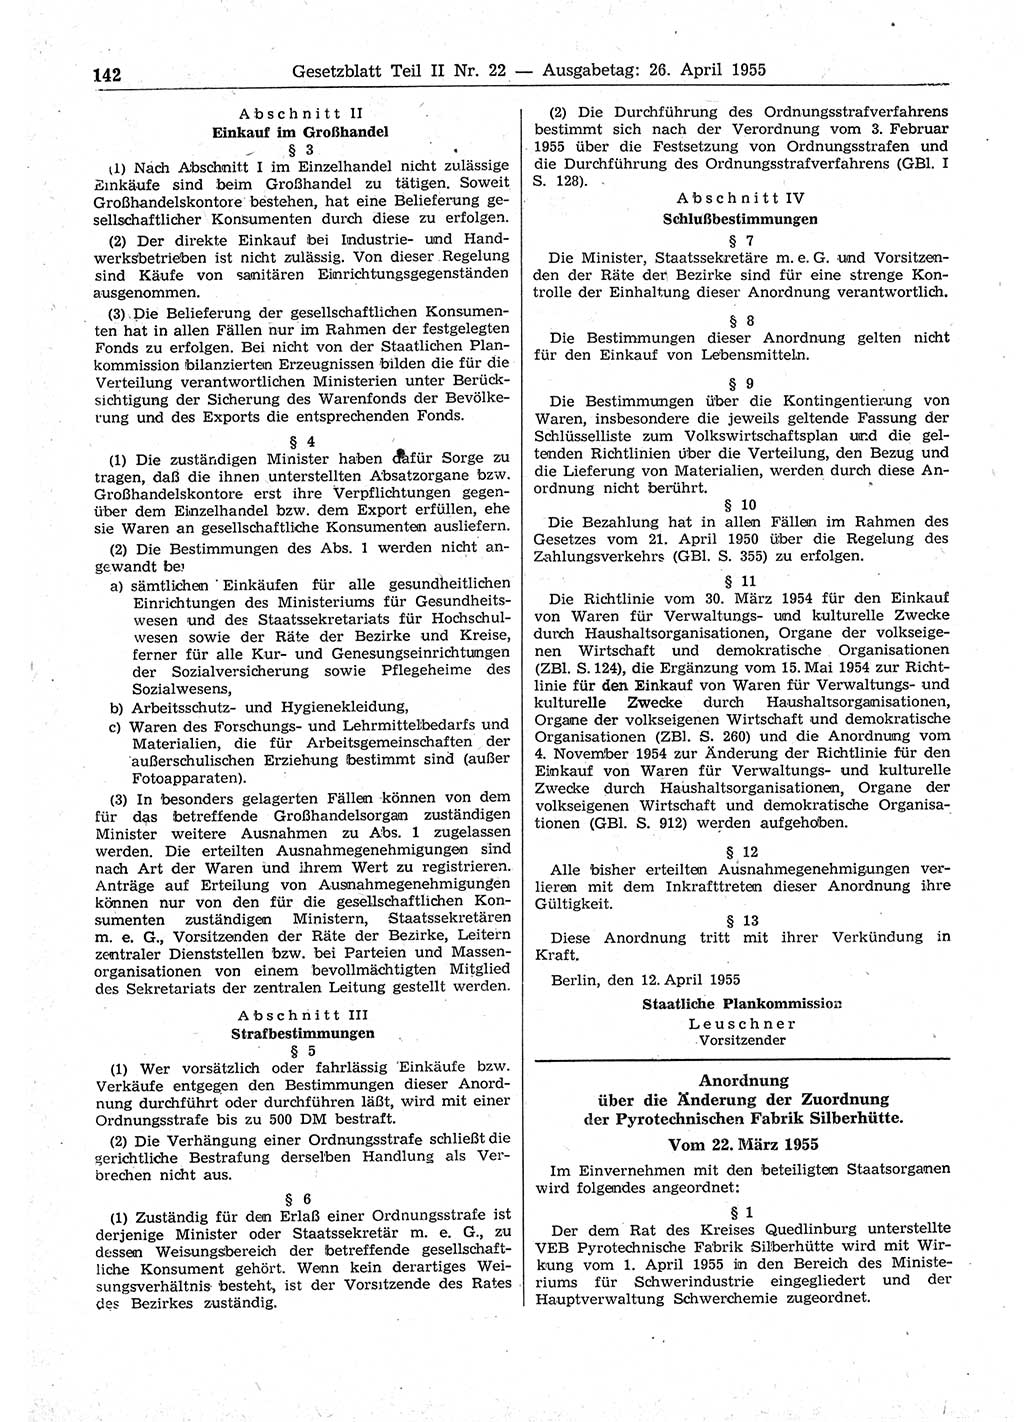 Gesetzblatt (GBl.) der Deutschen Demokratischen Republik (DDR) Teil ⅠⅠ 1955, Seite 142 (GBl. DDR ⅠⅠ 1955, S. 142)